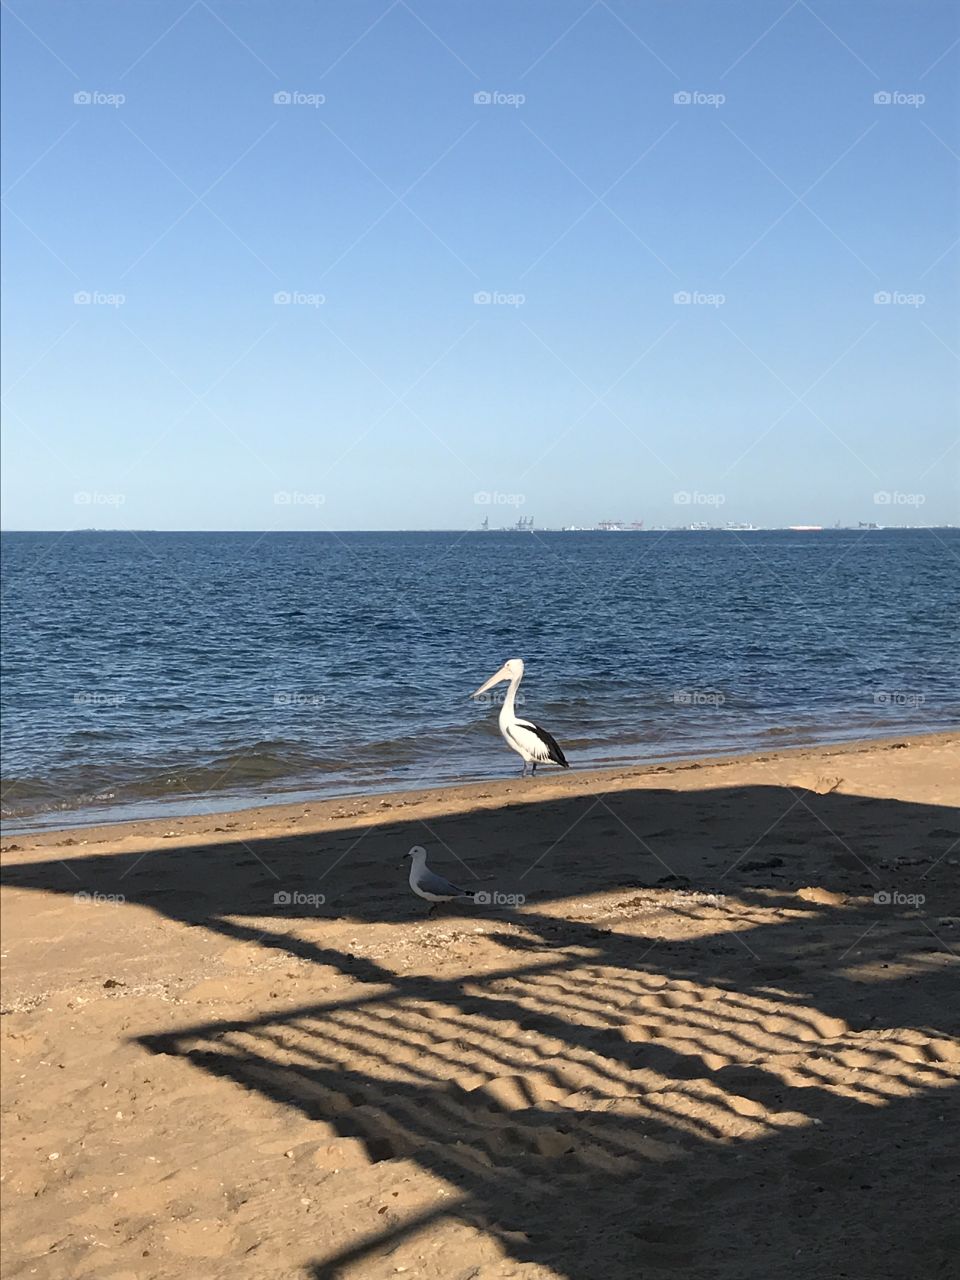 Pelican, ocean, sand